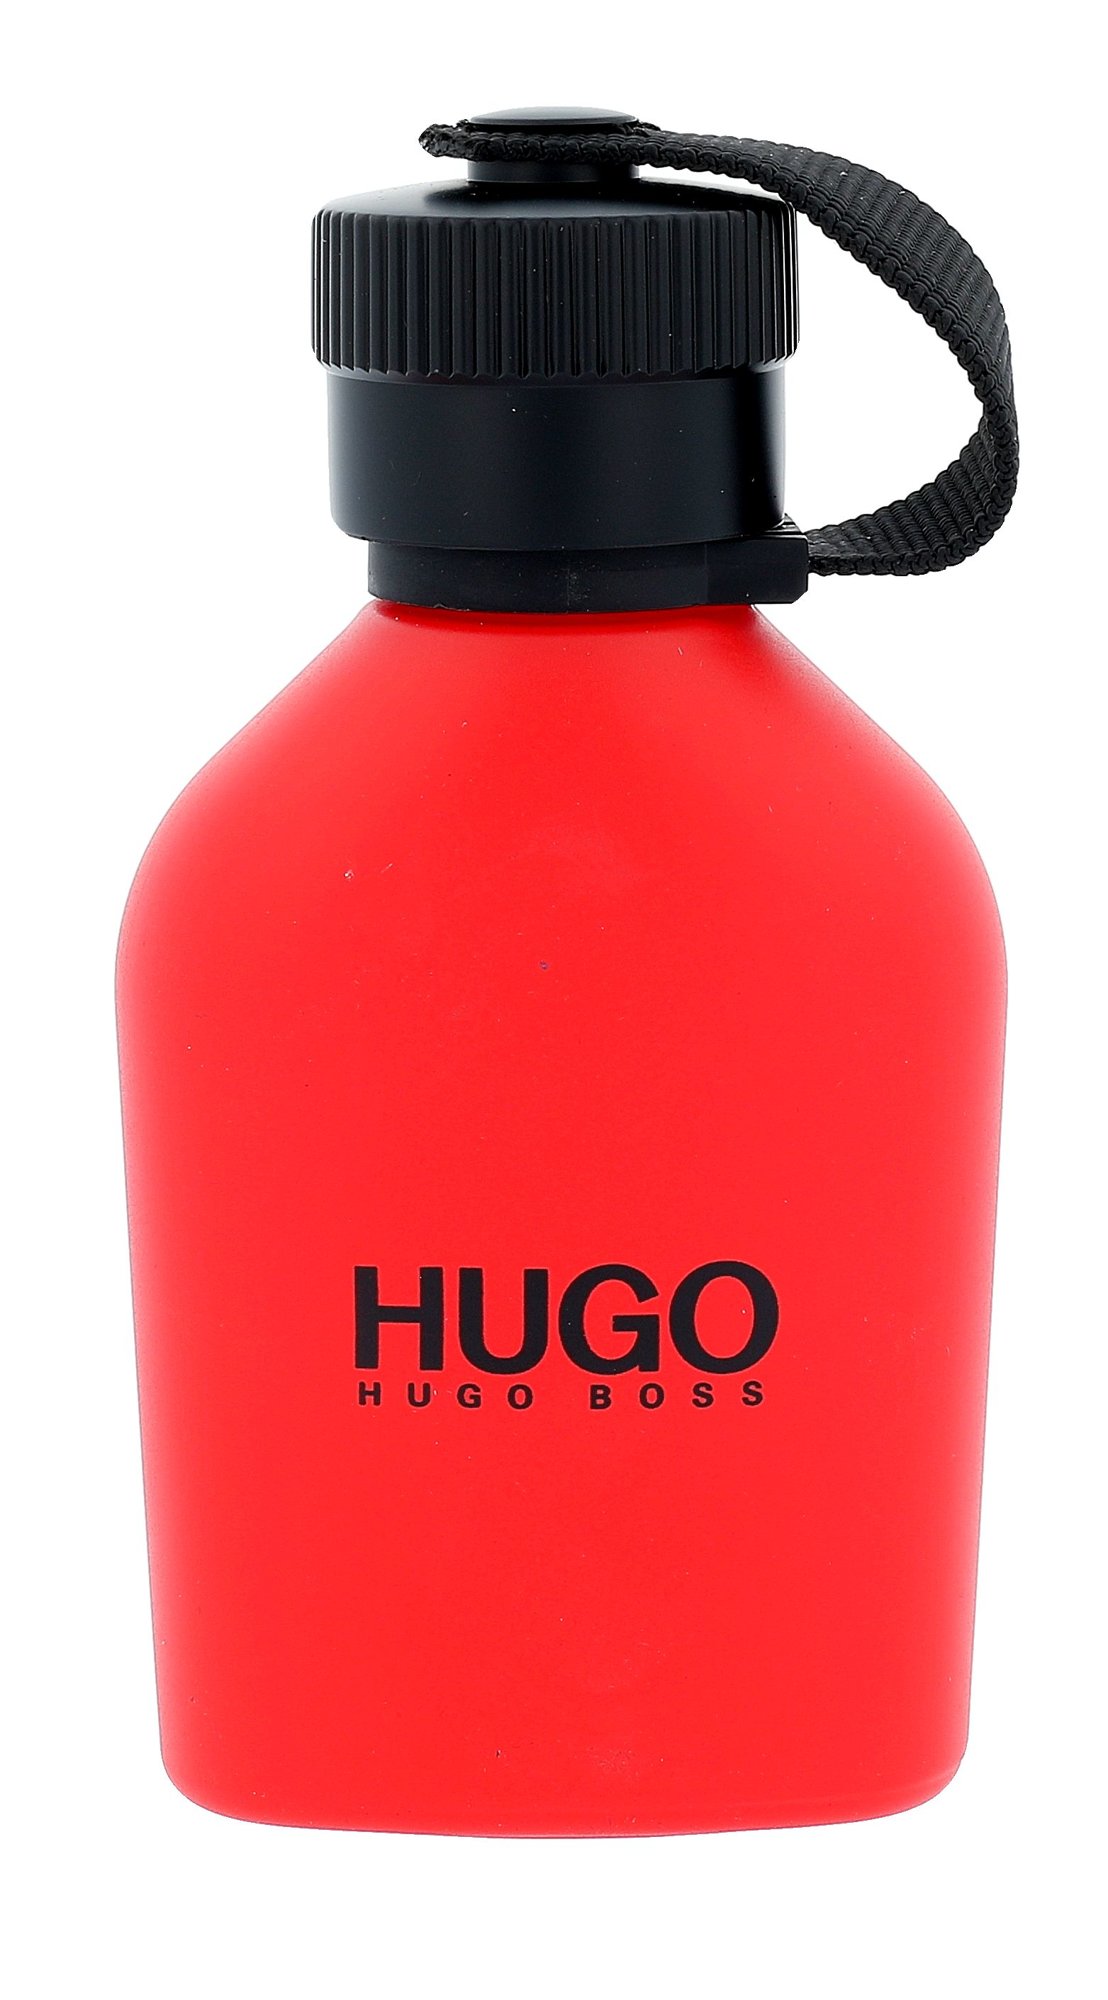 HUGO BOSS Hugo Red, edt 75ml